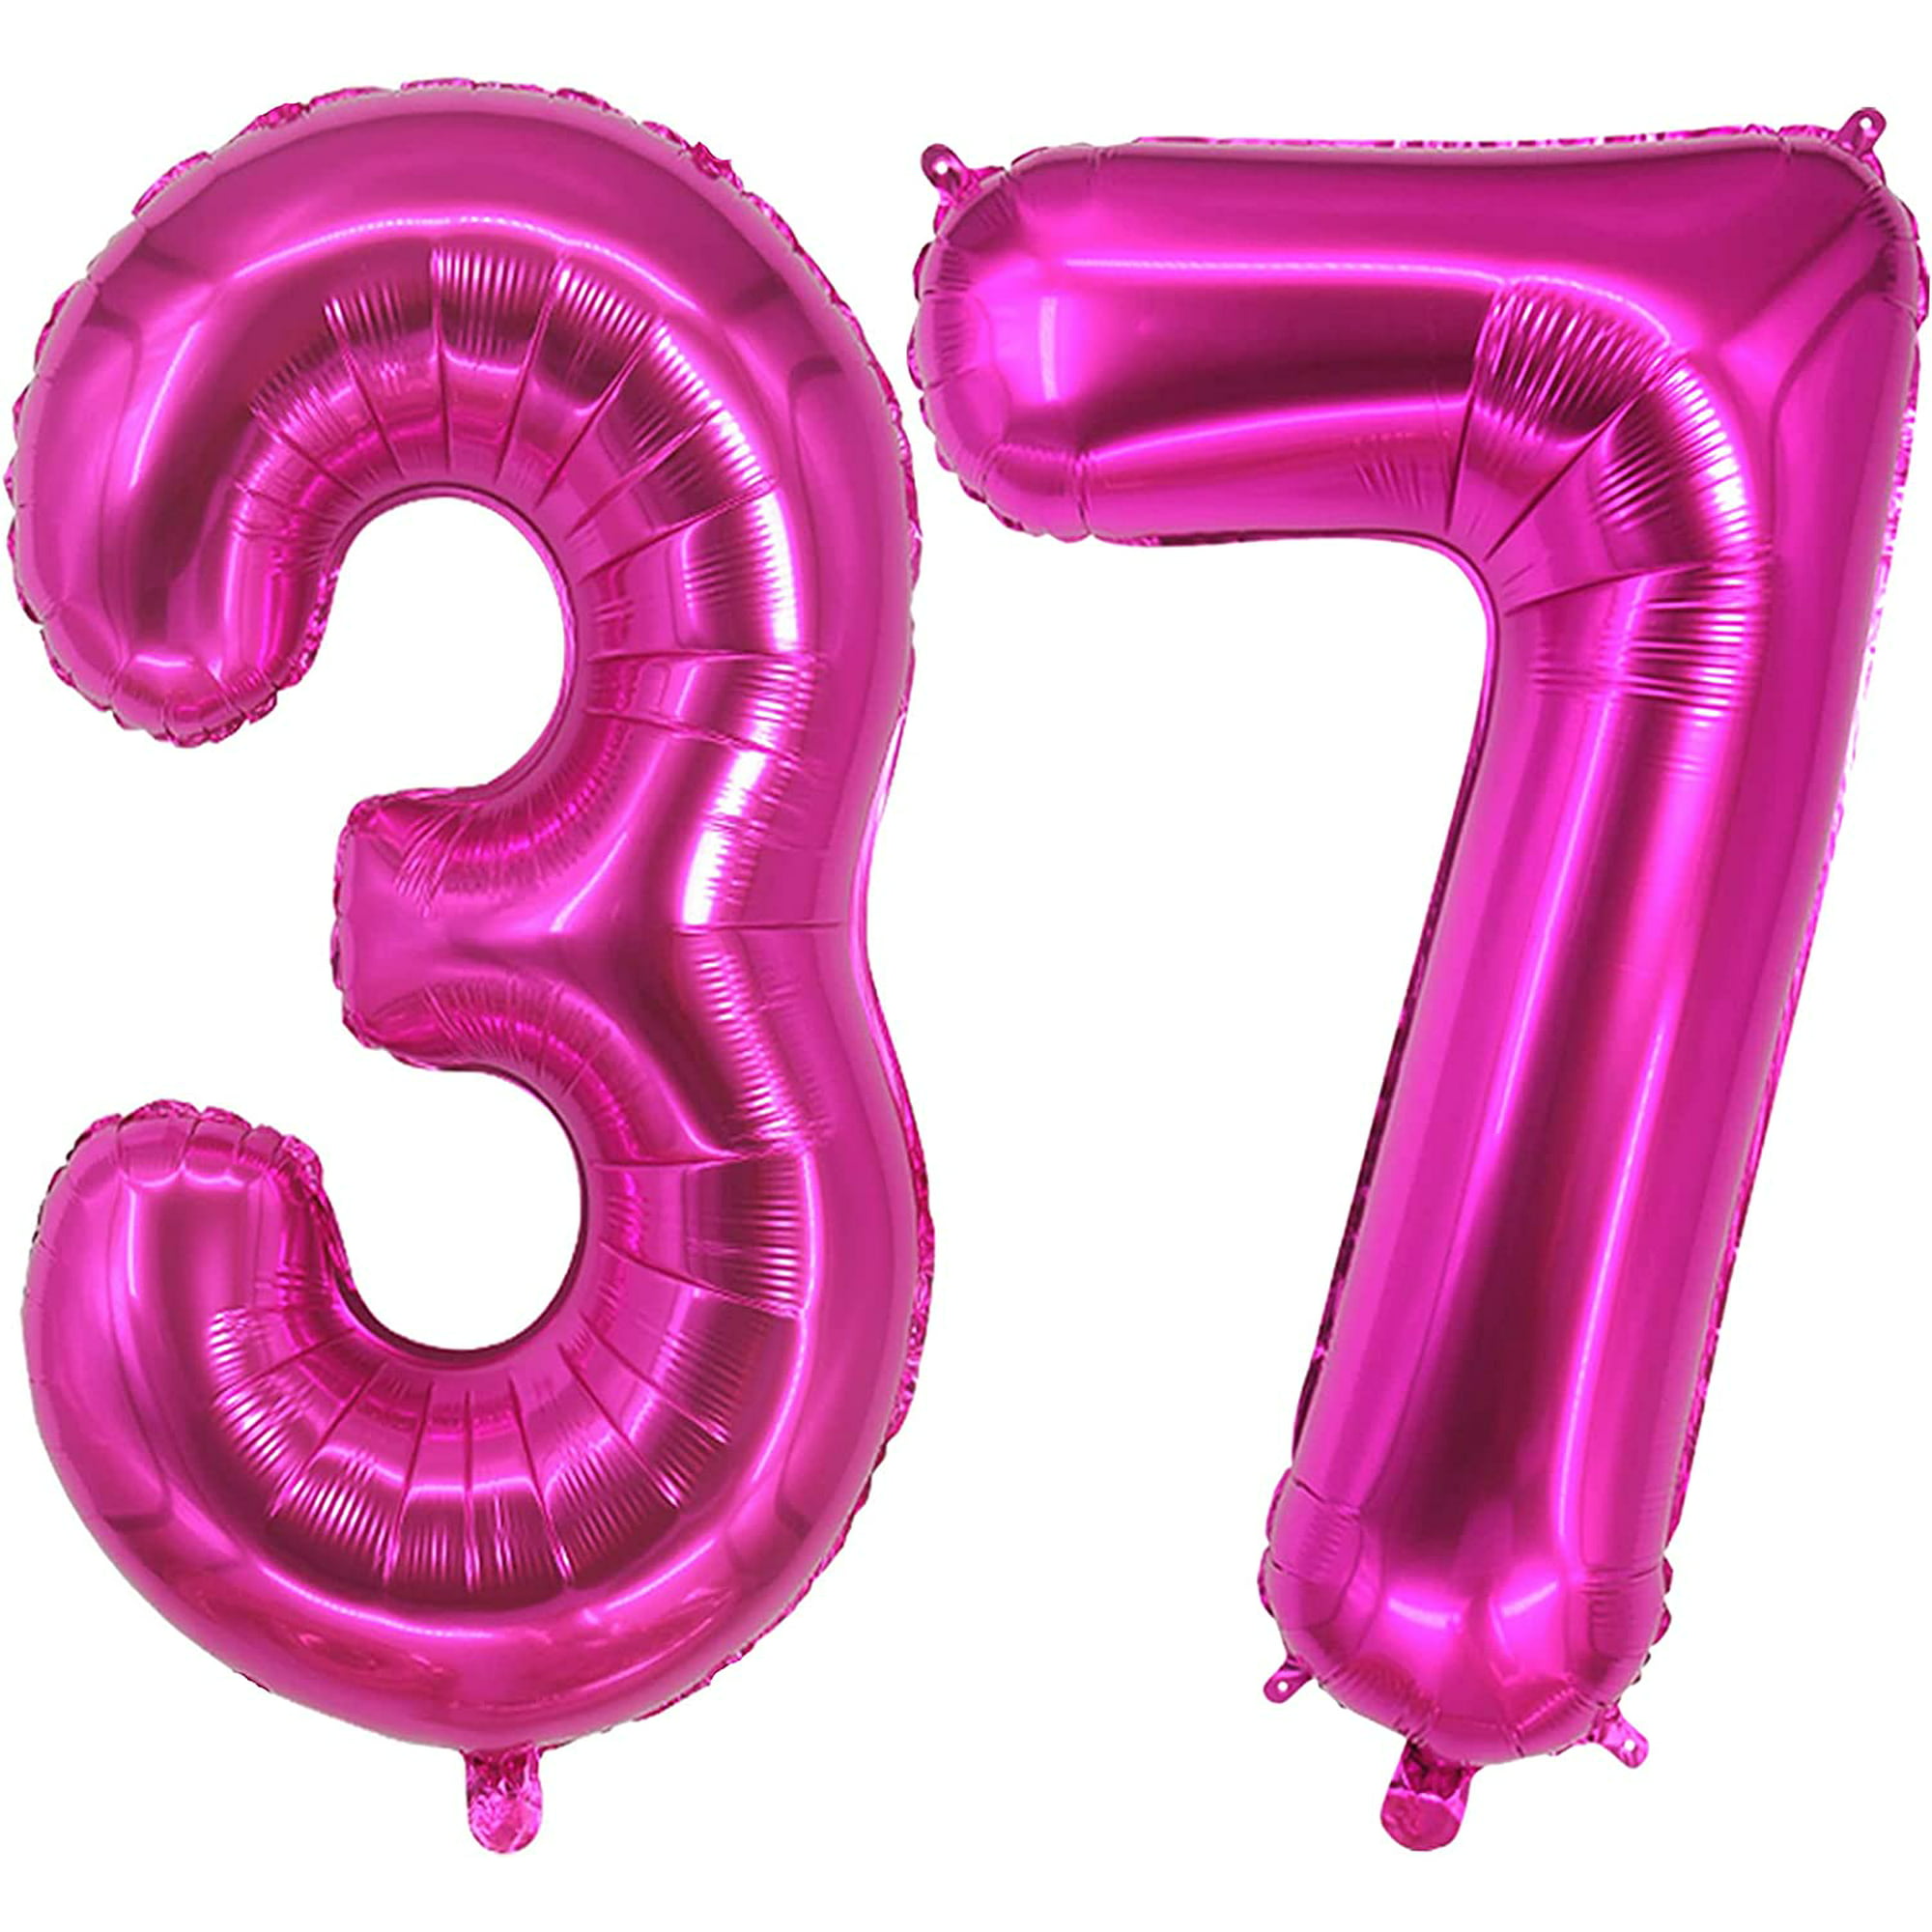 37 decoraciones para fiesta de cumpleaños 37 ideas para fiesta de